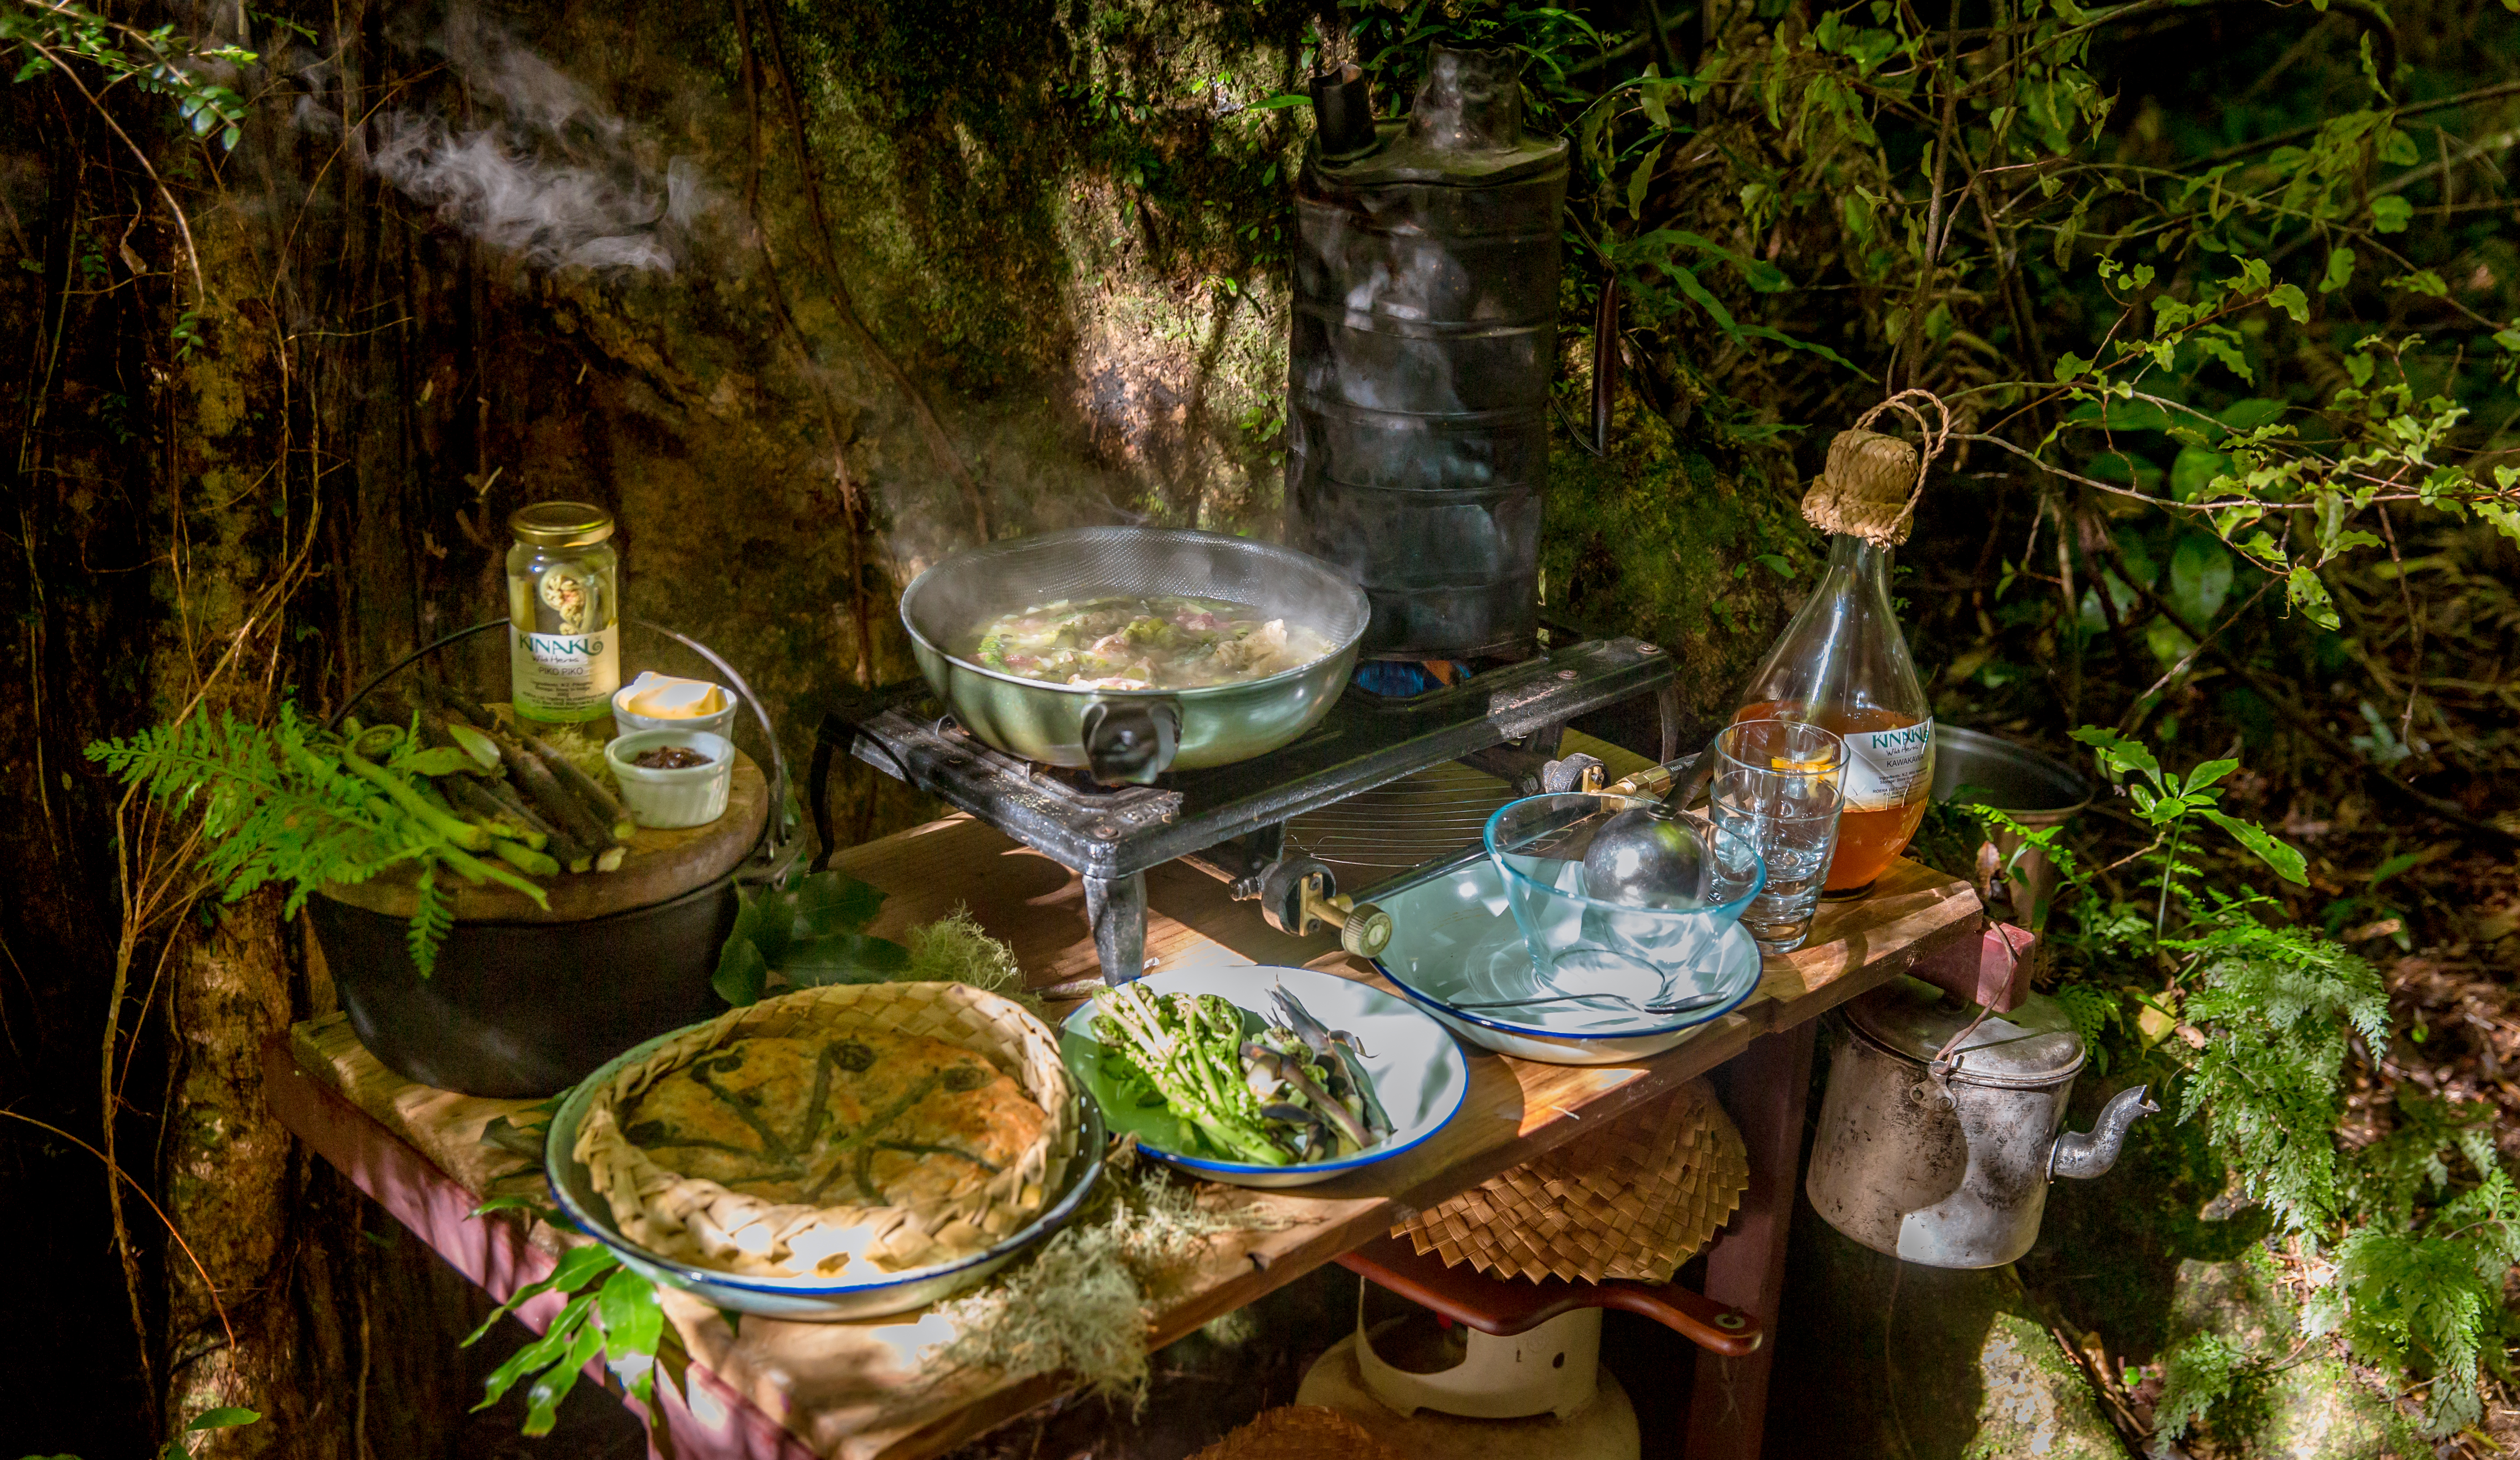 Charles Royal indigenous food trail in Rotorua – Bush